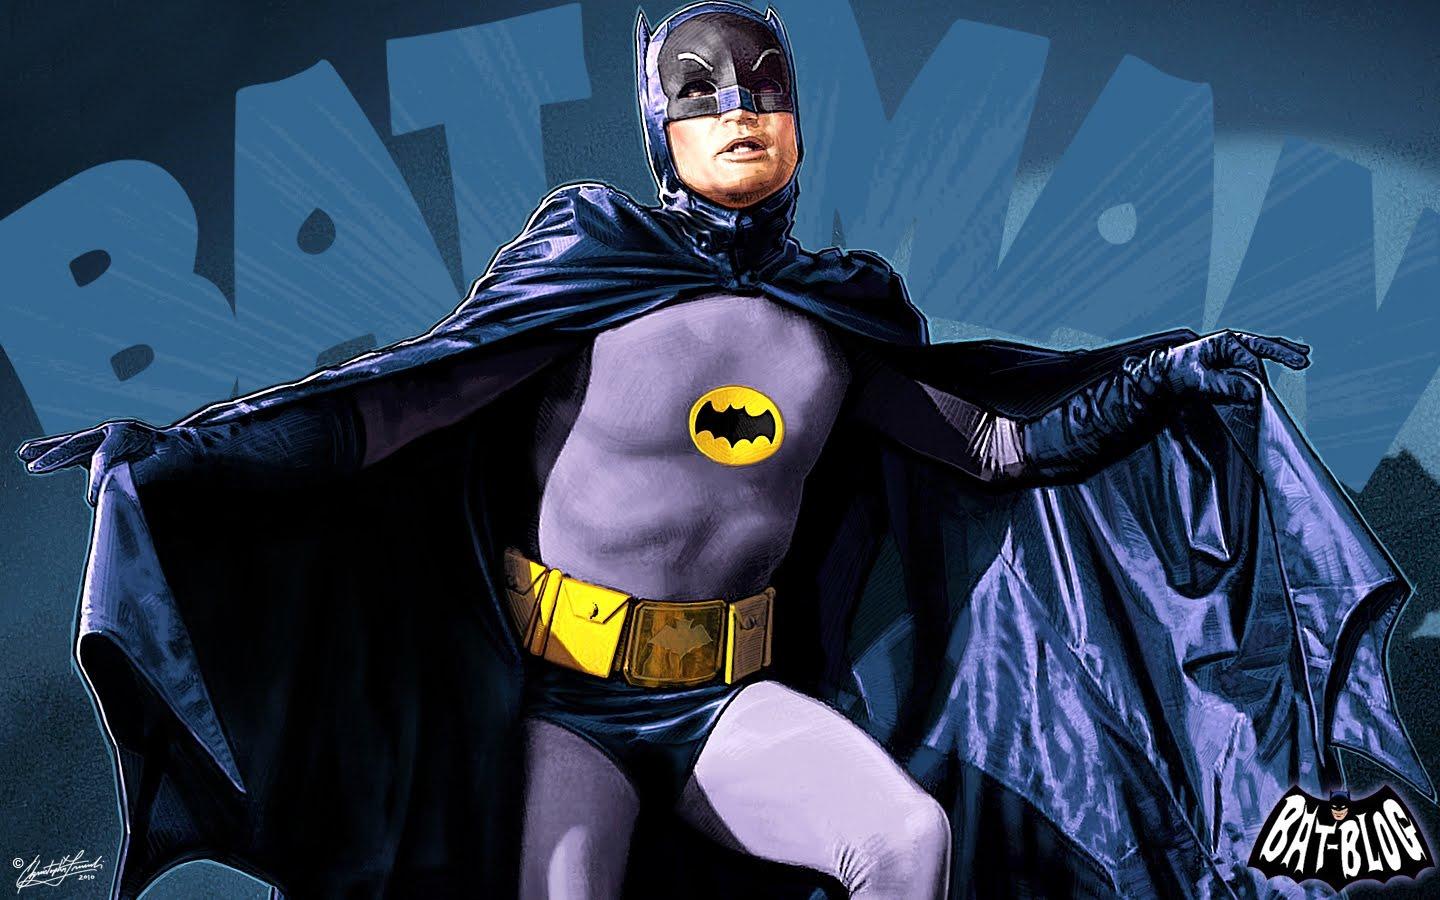 Adam West Bat Logo - Adam West, Batman Actor, dies aged 88